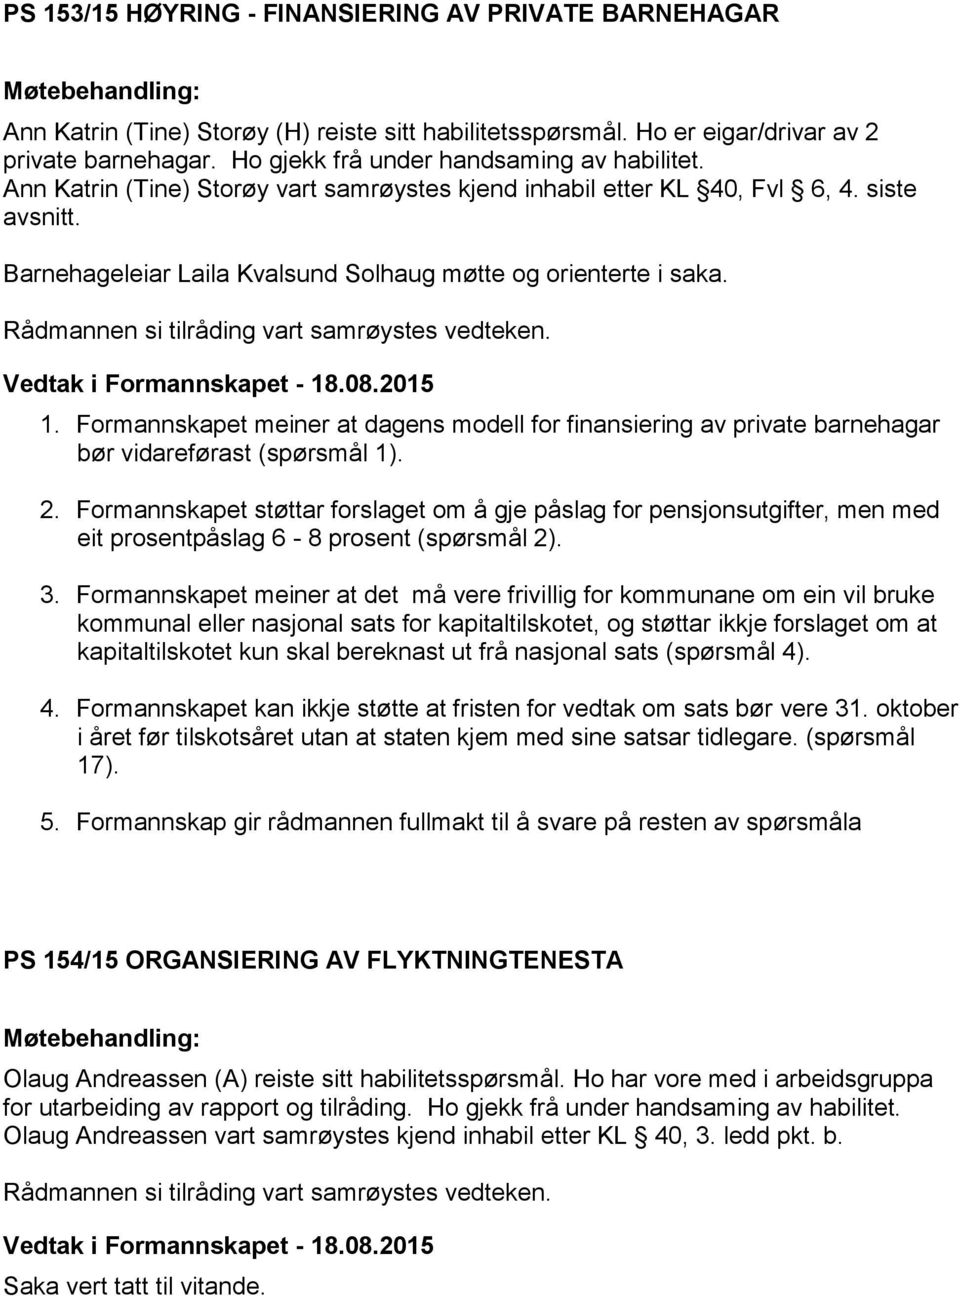 Barnehageleiar Laila Kvalsund Solhaug møtte og orienterte i saka. Vedtak i Formannskapet - 18.08.2015 1.